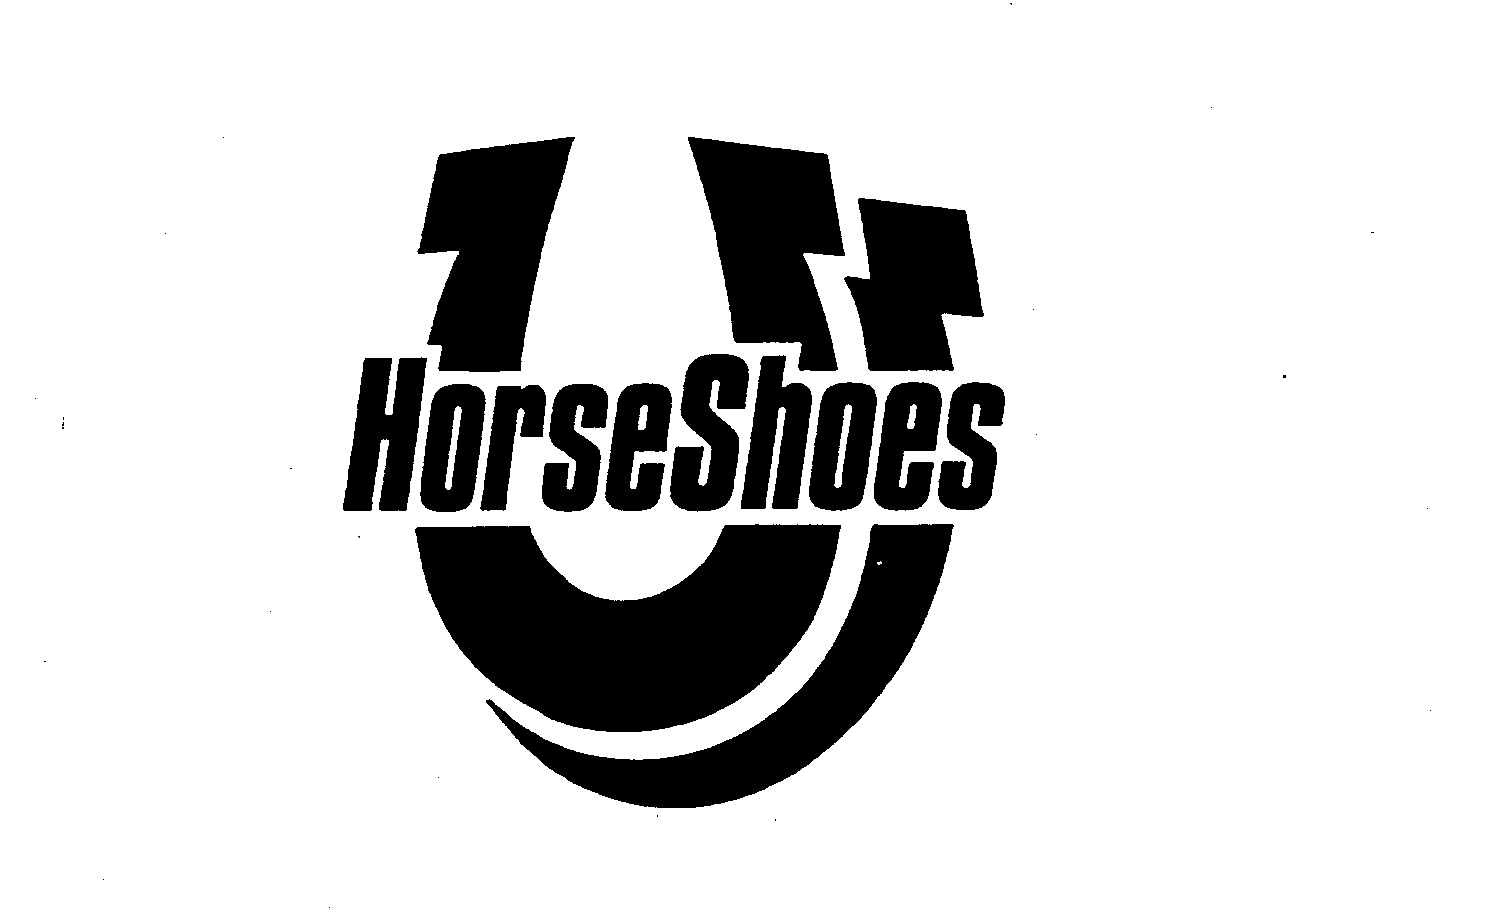  HORSESHOES